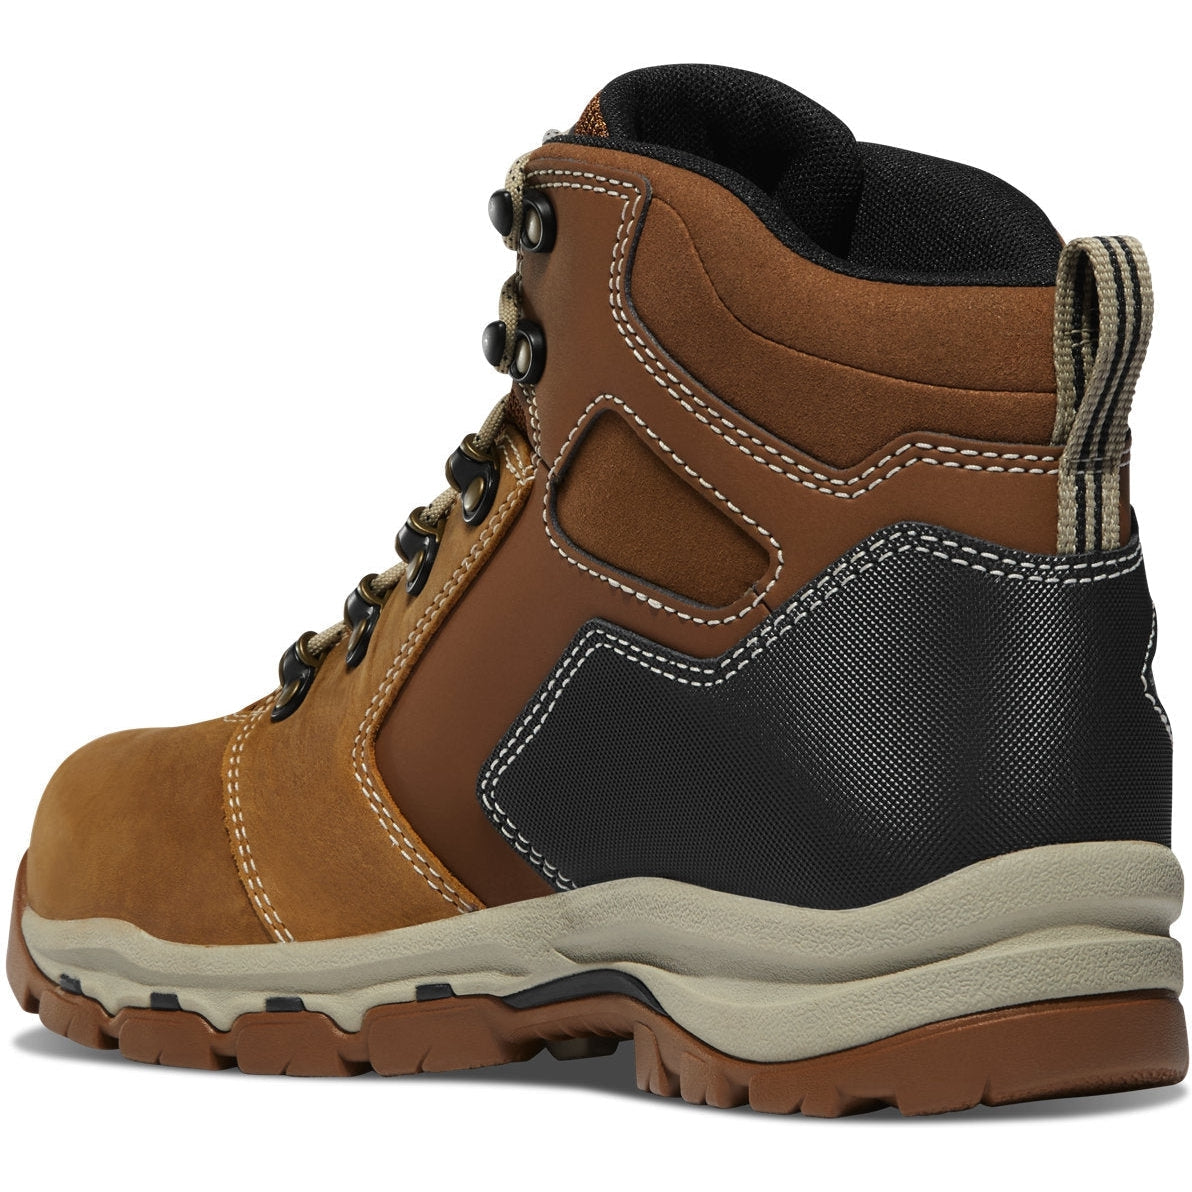 Danner Men's Vicious 4.5" Comp Toe WP Slip Resist Work Boot -Tan- 13886  - Overlook Boots